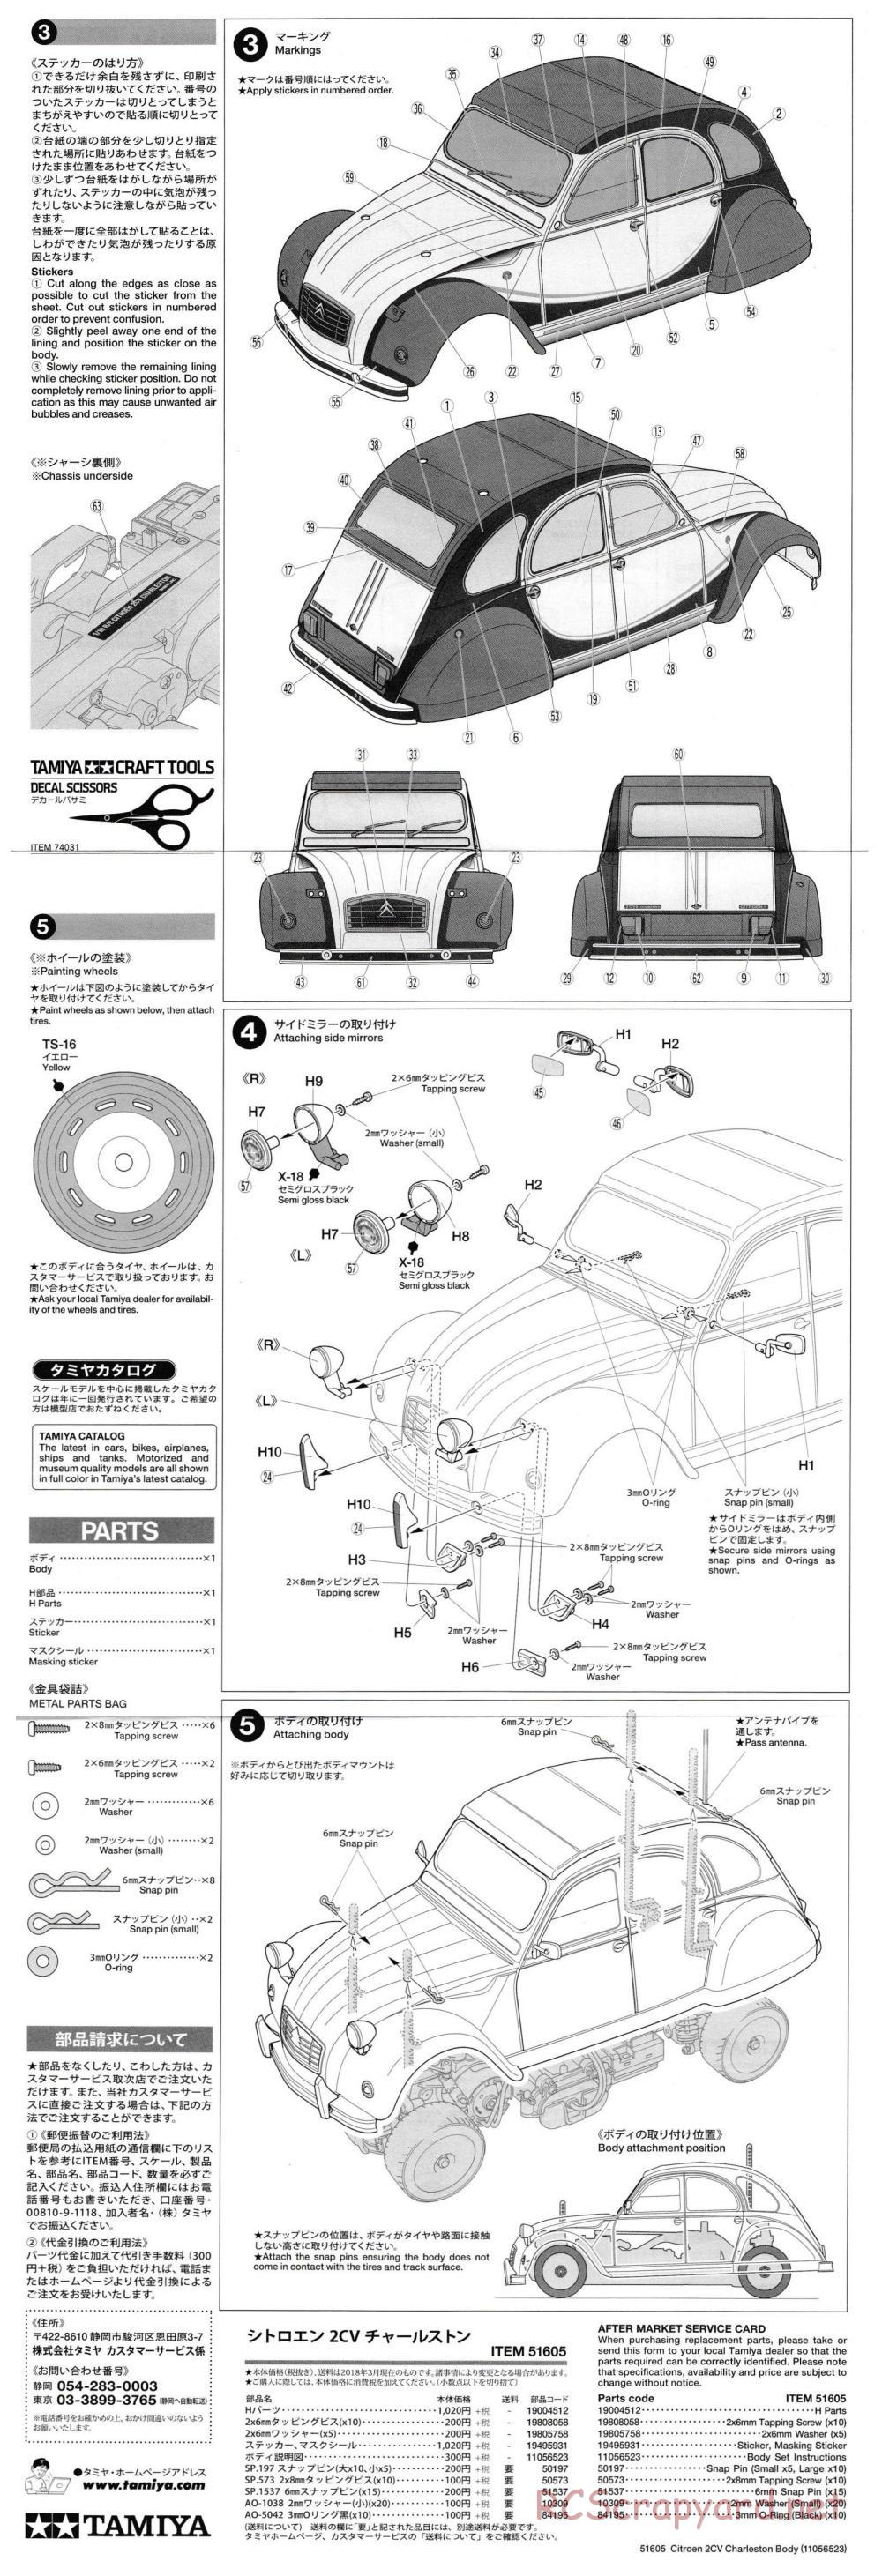 Tamiya - Citroen 2CV Charleston - M-05 Chassis - Body Manual - Page 2